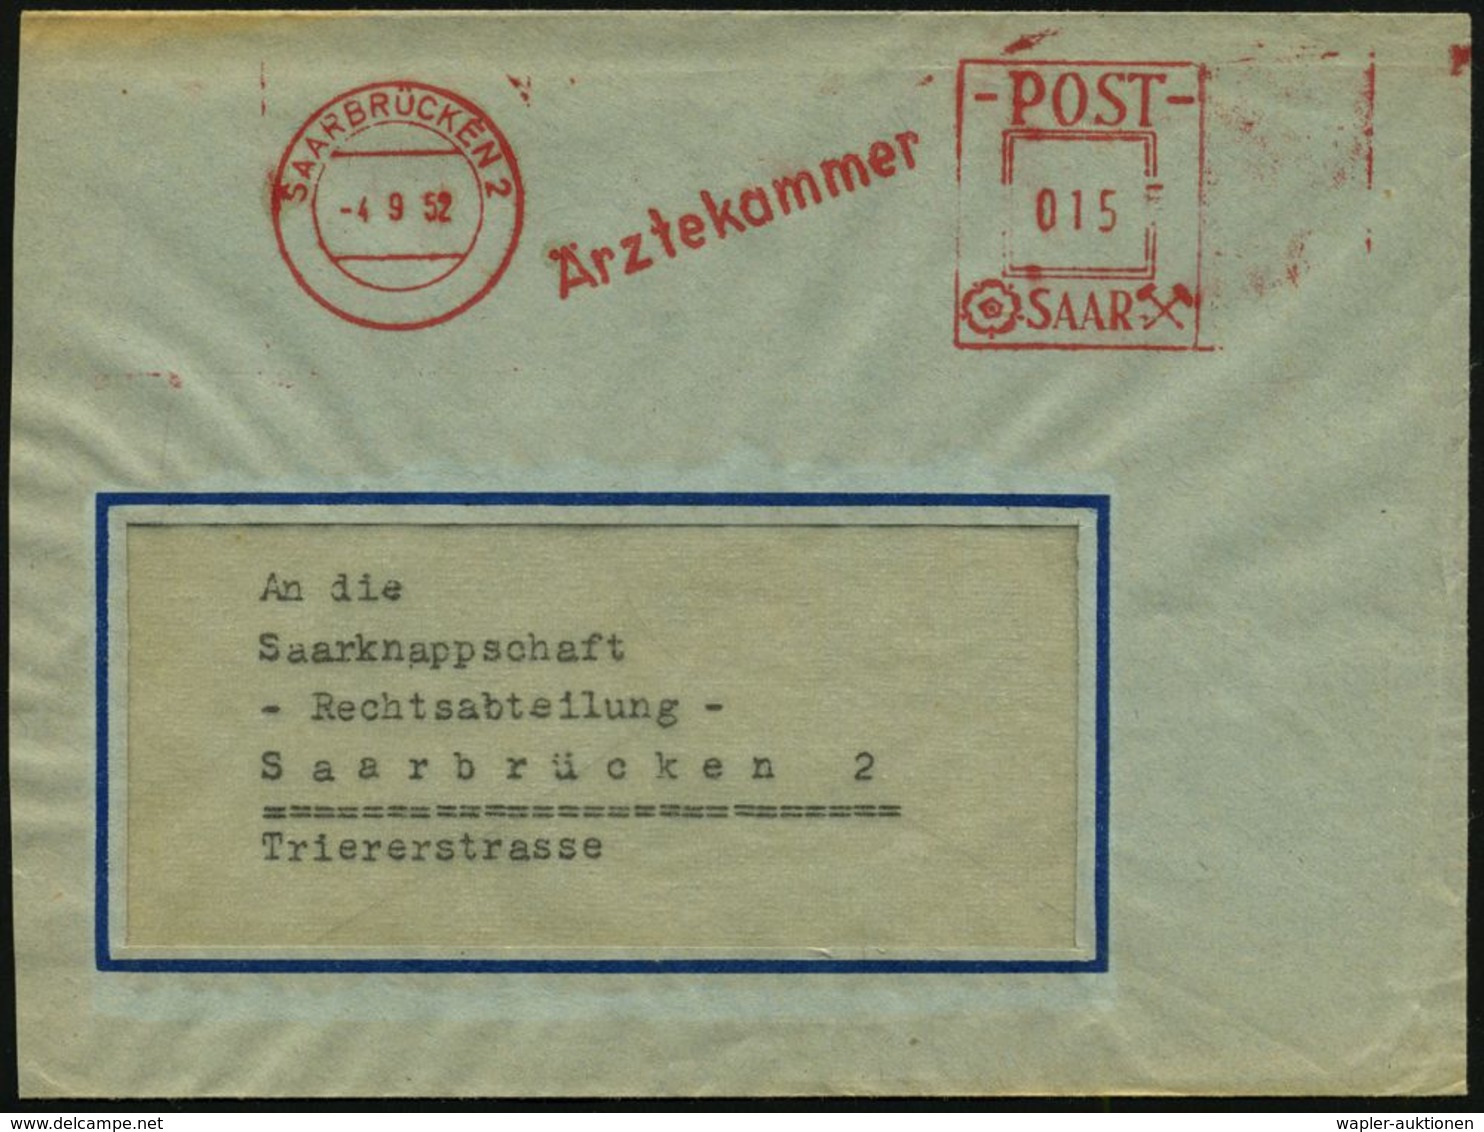 MEDIZINISCHE INSTITUTIONEN & INSTITUTE : SAARBRÜCKEN 2/ Ärztekammer 1954 (11.10.) AFS, Typ Postalia "POST SAAR" , Ortsbf - Médecine